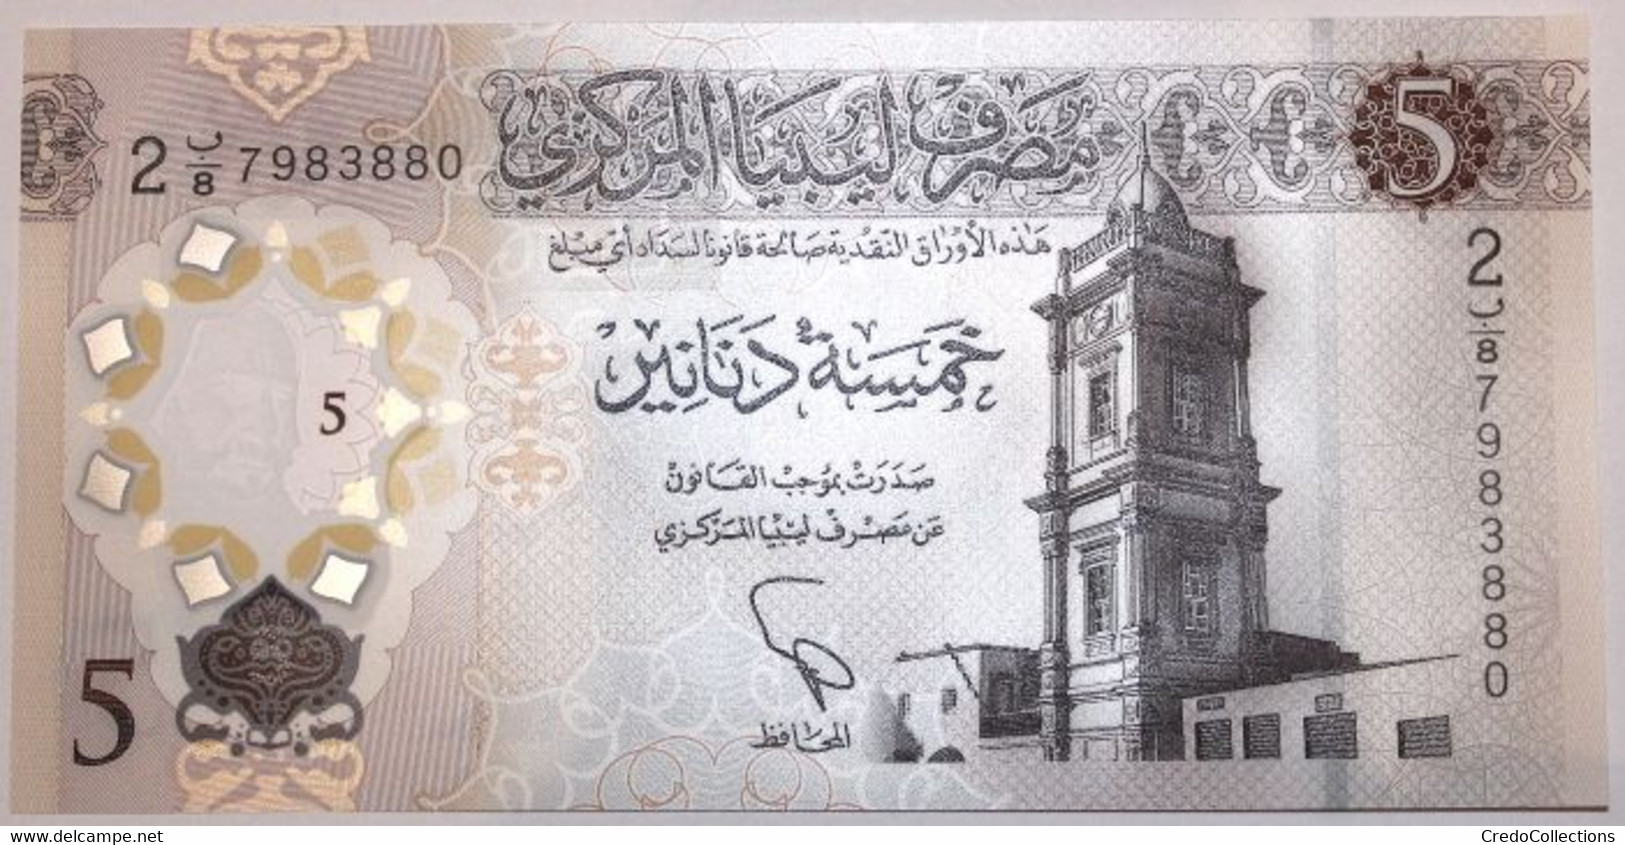 Libye - 5 Dinars - 2021 - PICK 86a - NEUF - Libya